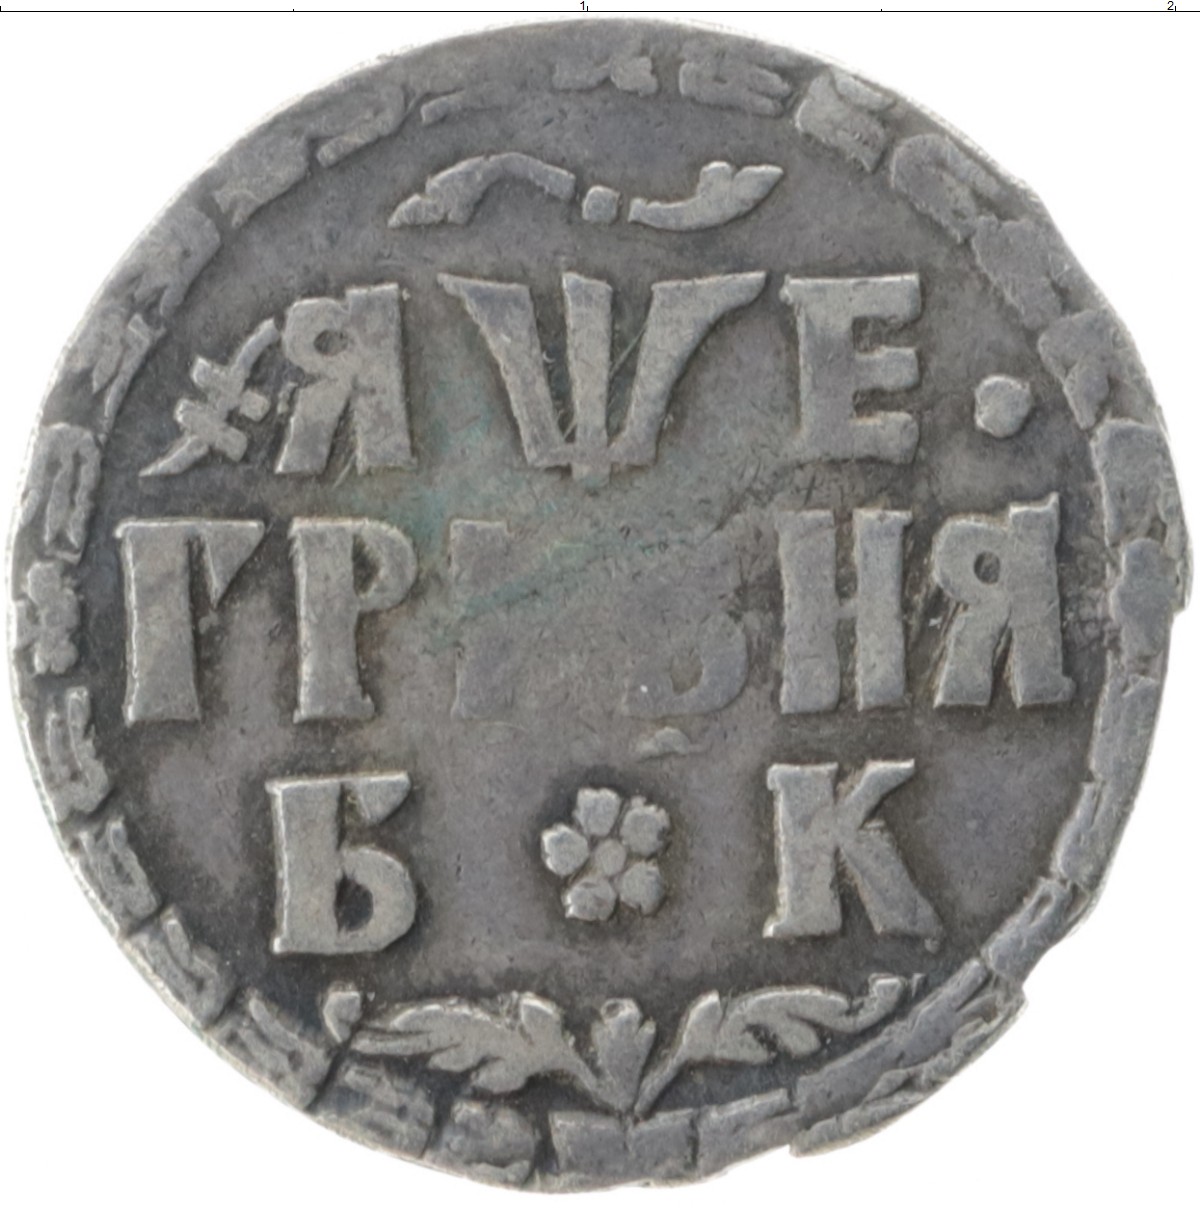 1 гривна стоит 3 рубля 70 копеек. Монеты Петра 1 (1689-1725). Гривна Петра 1 1705. Монета Петра 1 1705. 1705. Серебряные монеты Петра первого.